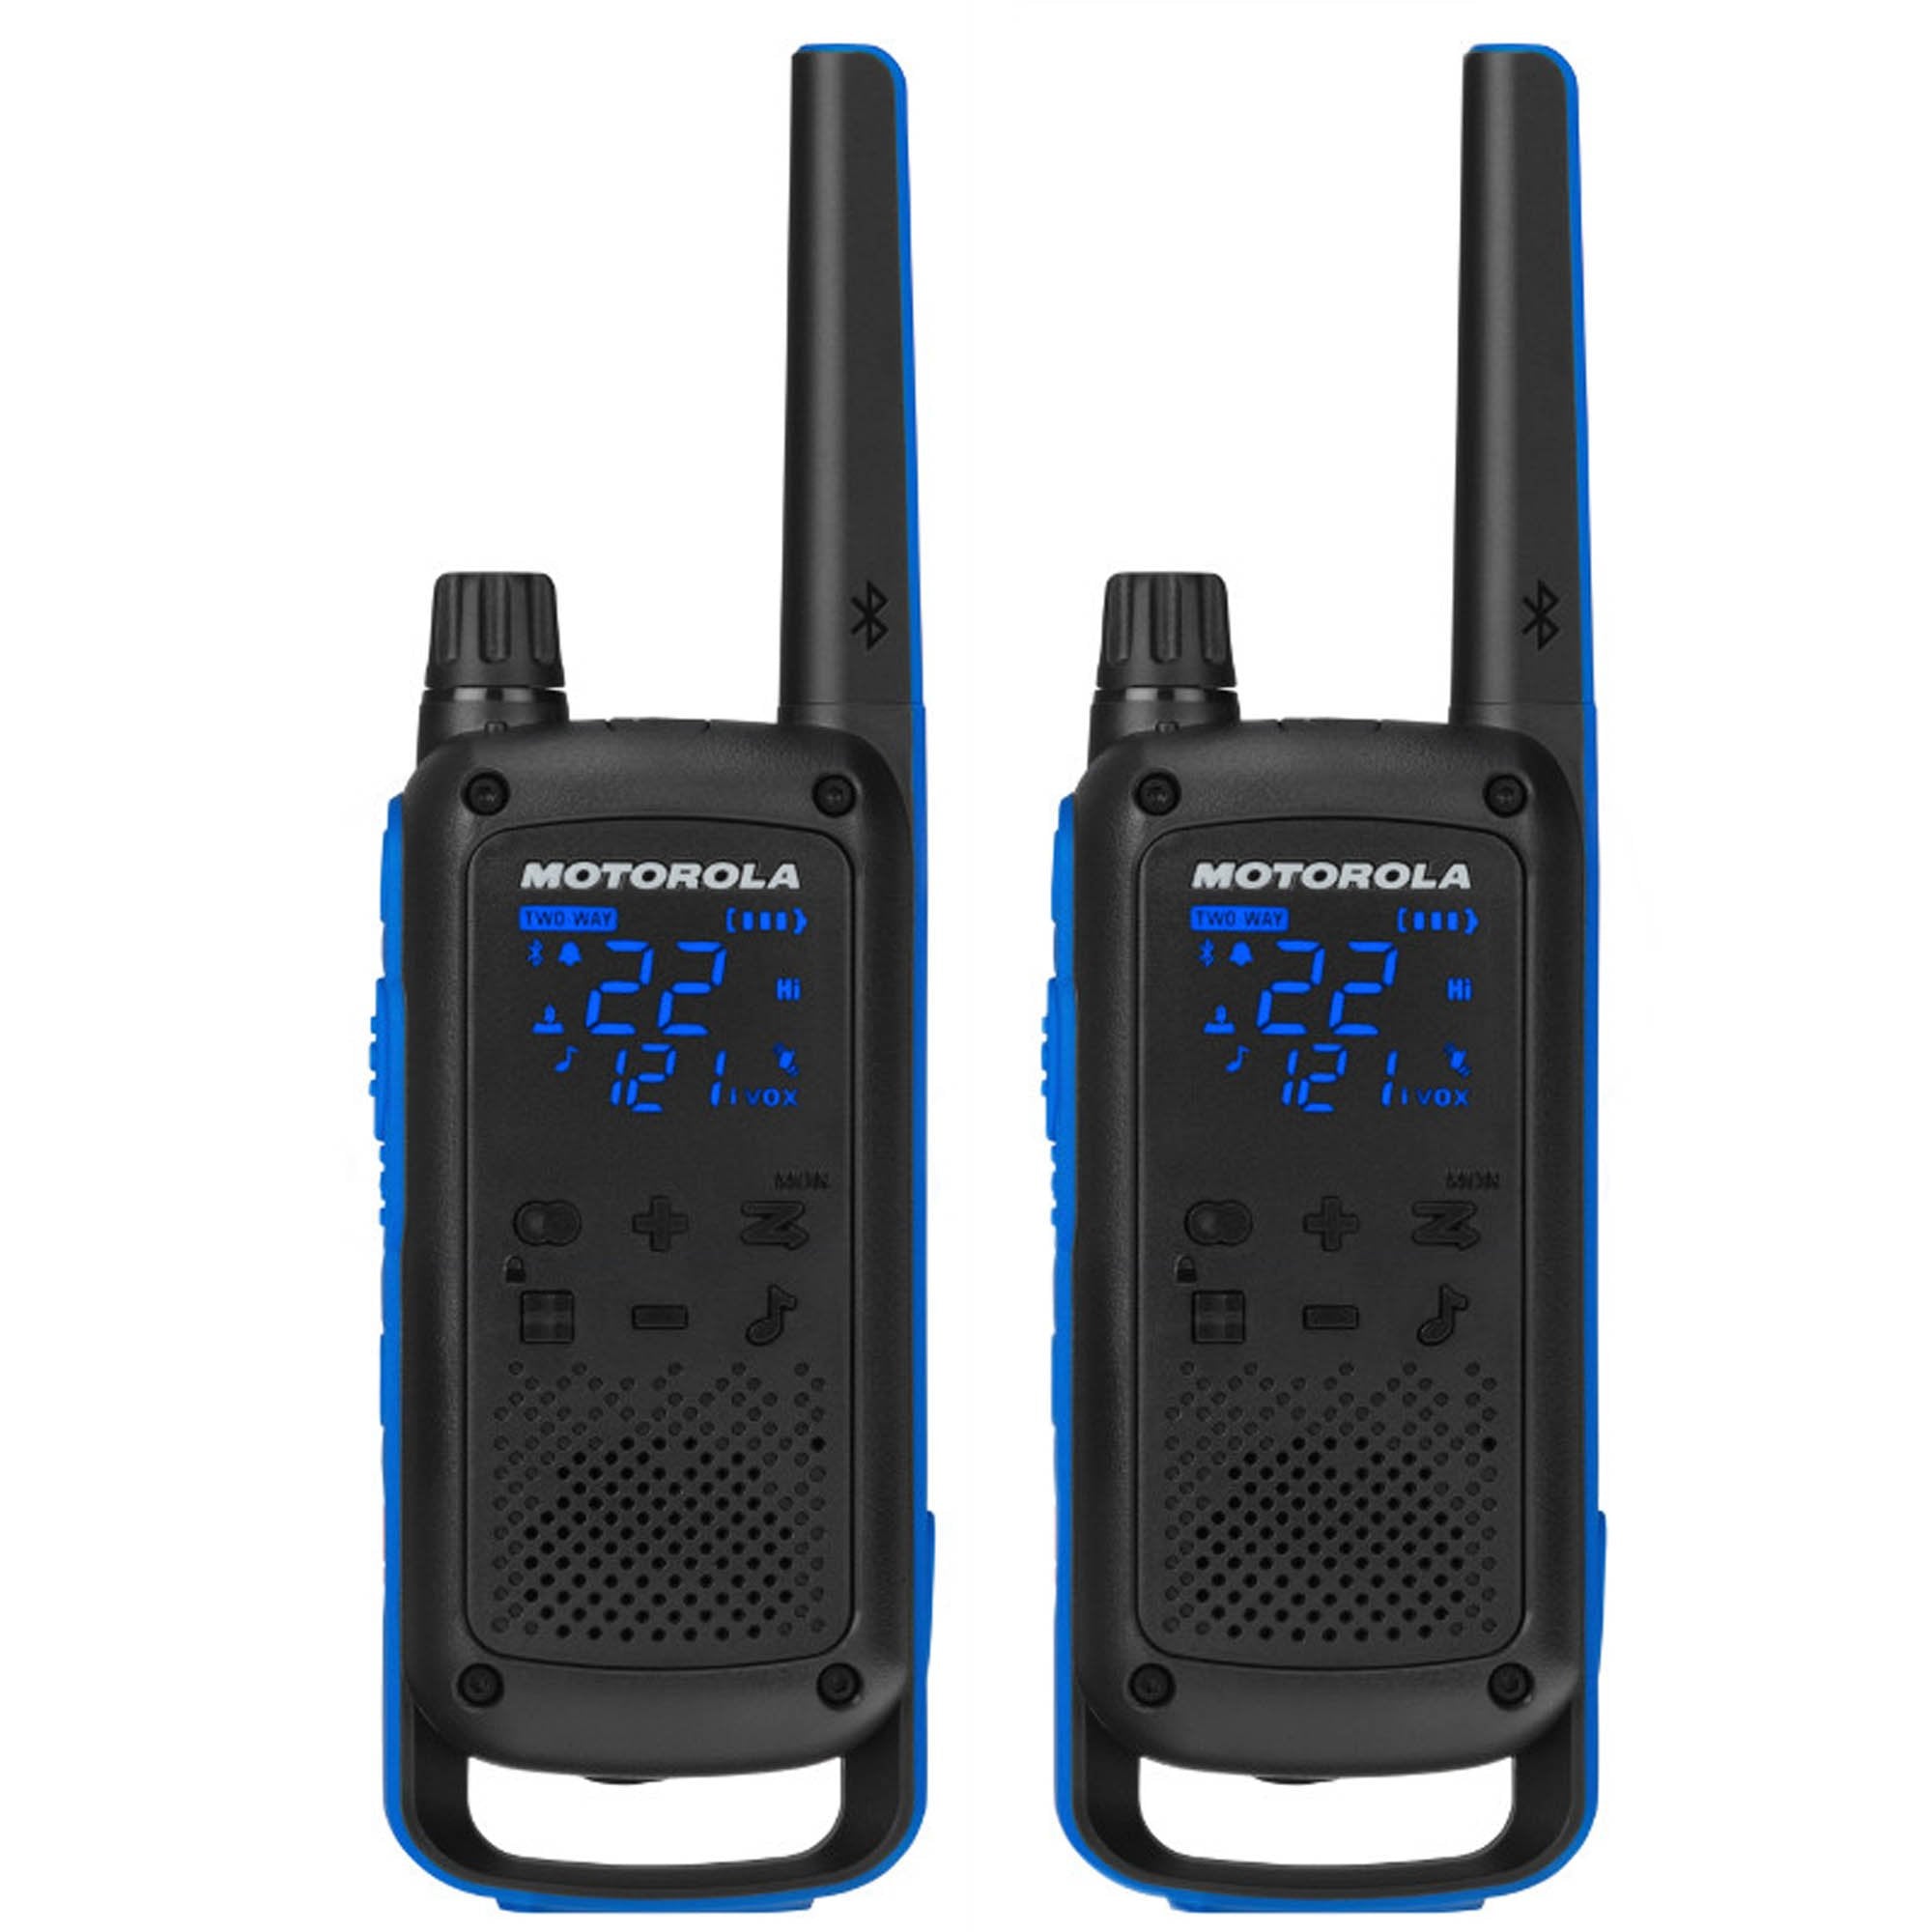 Pack of Motorola DLR1060 Walkie Talkie Radios - 3